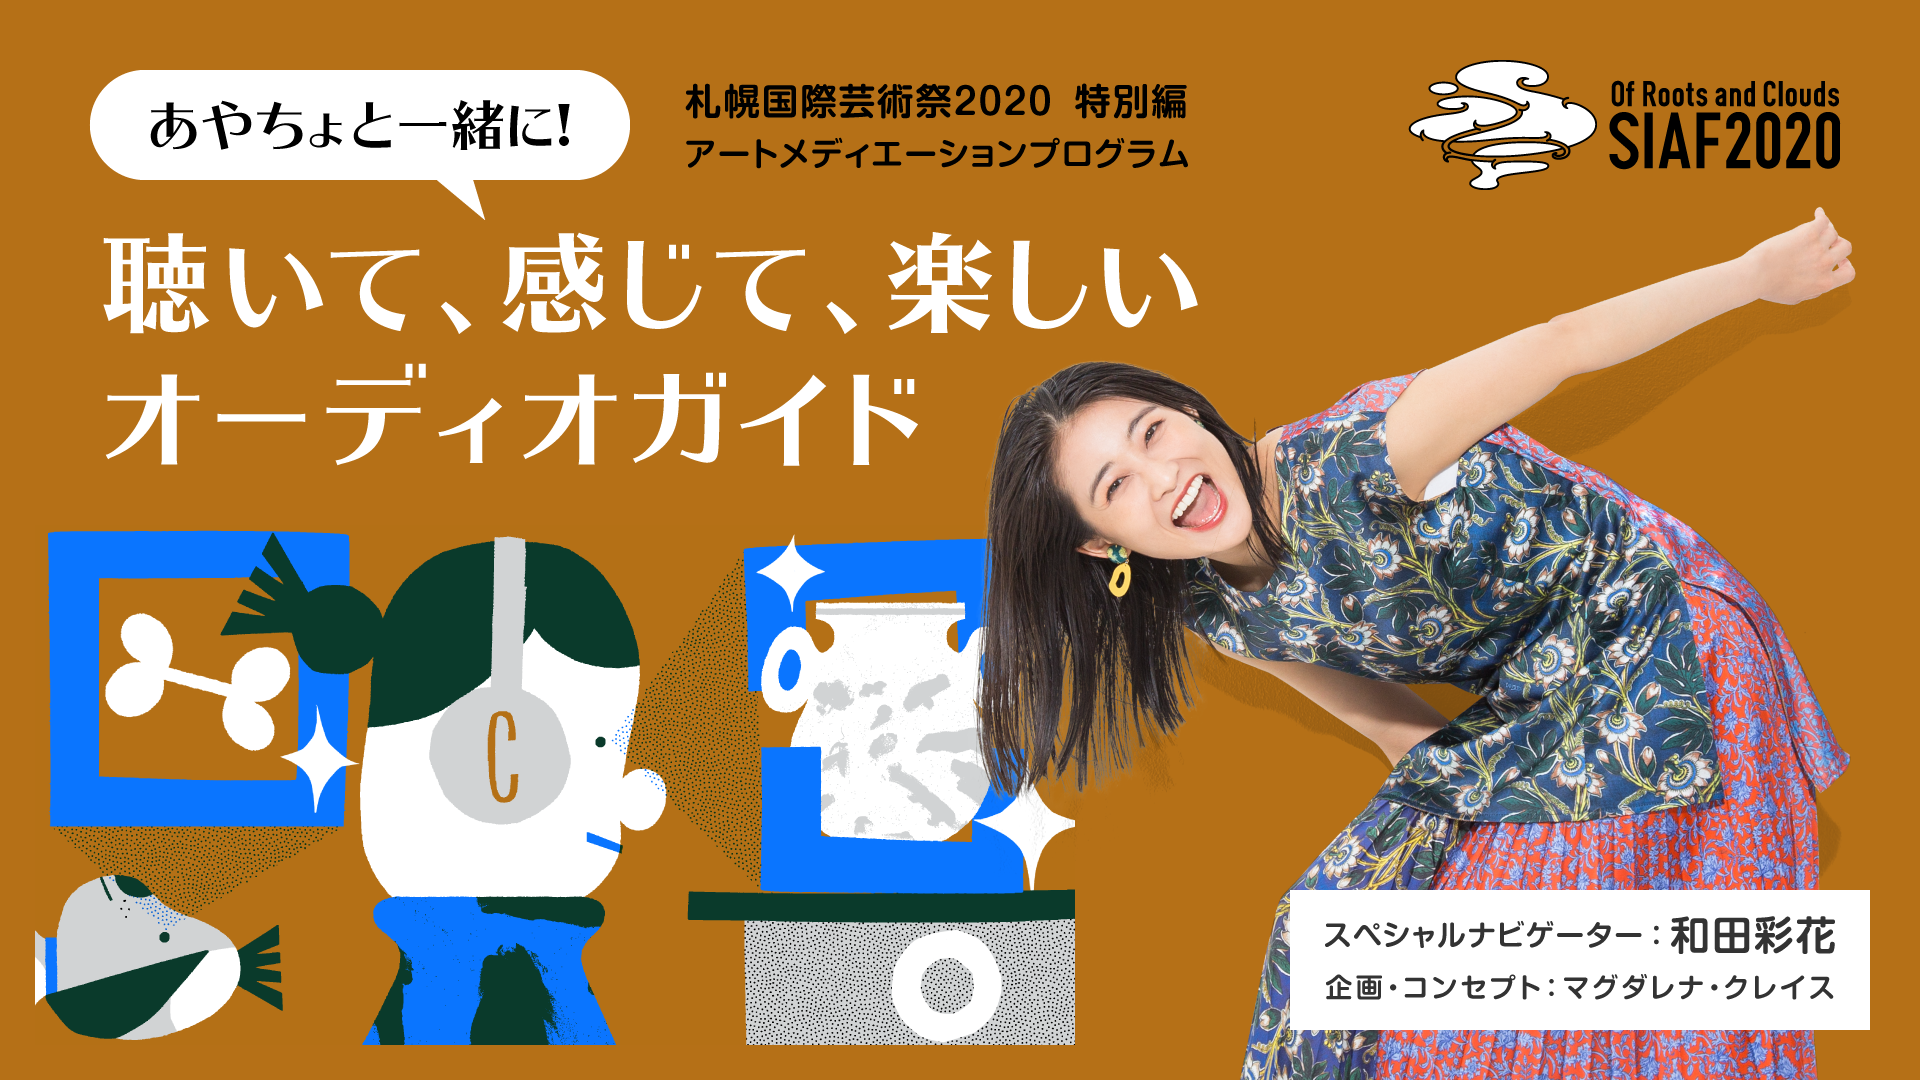 アイドル和田彩花さんと札幌国際芸術祭がコラボレーション！あやちょと一緒におうちで楽しめるオーディオガイドを公開